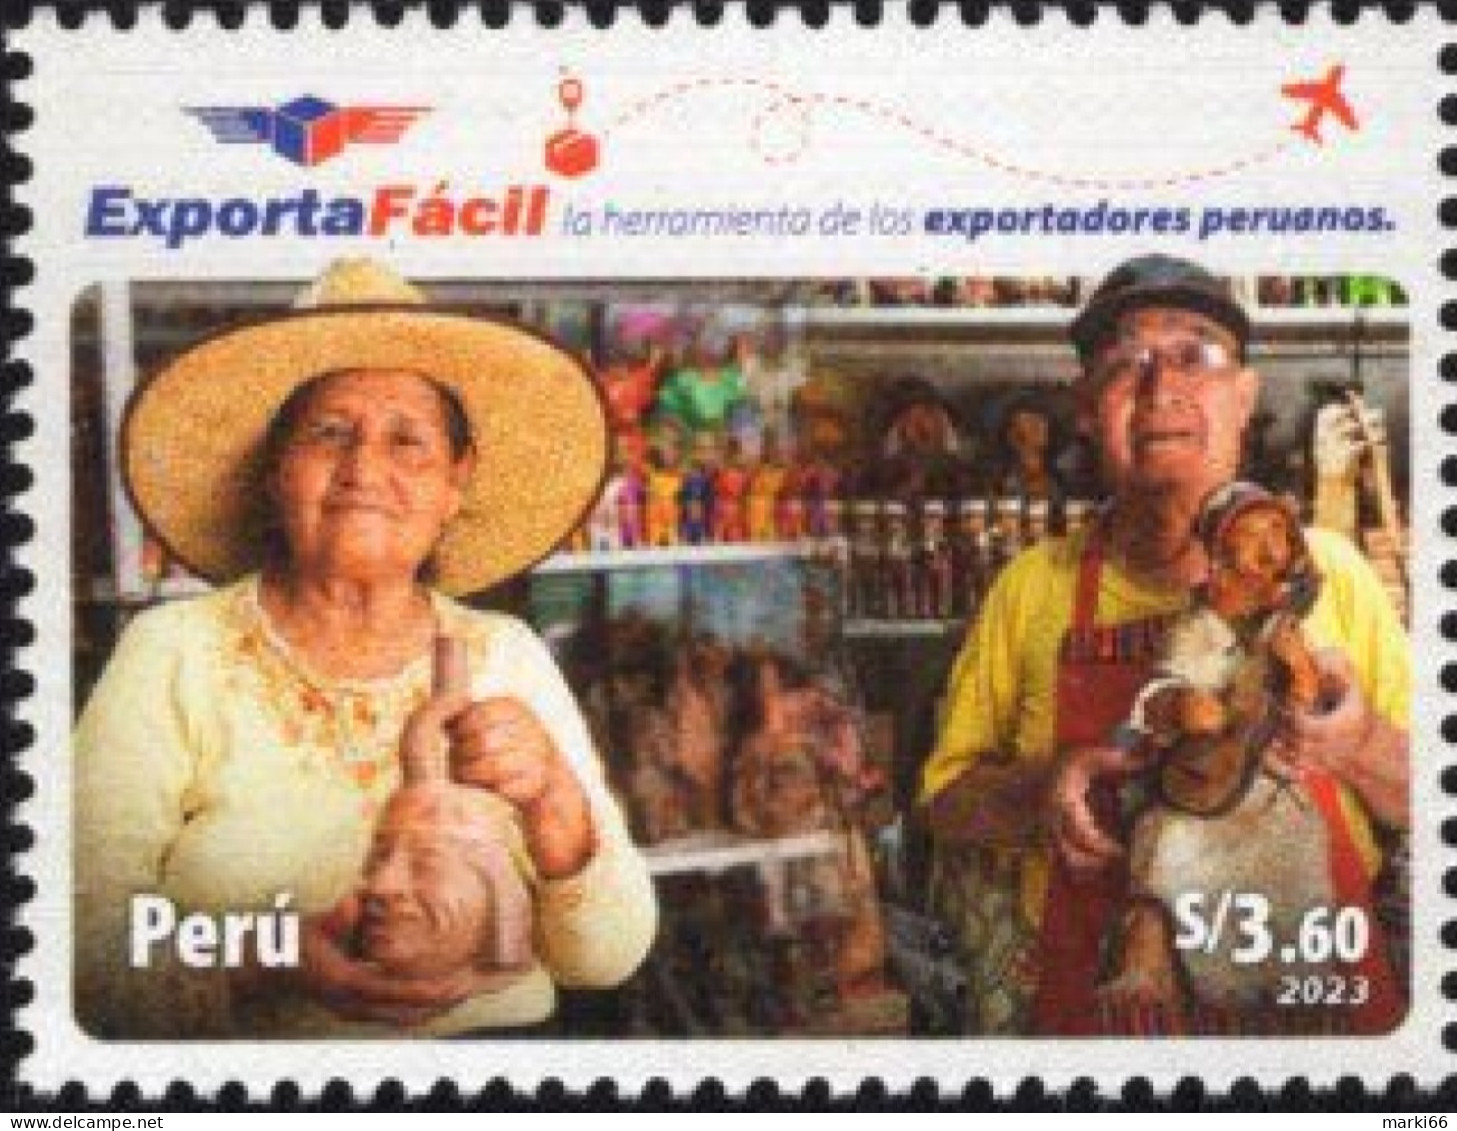 Peru - 2023 - Peruvian Export - Mint Stamp - Peru